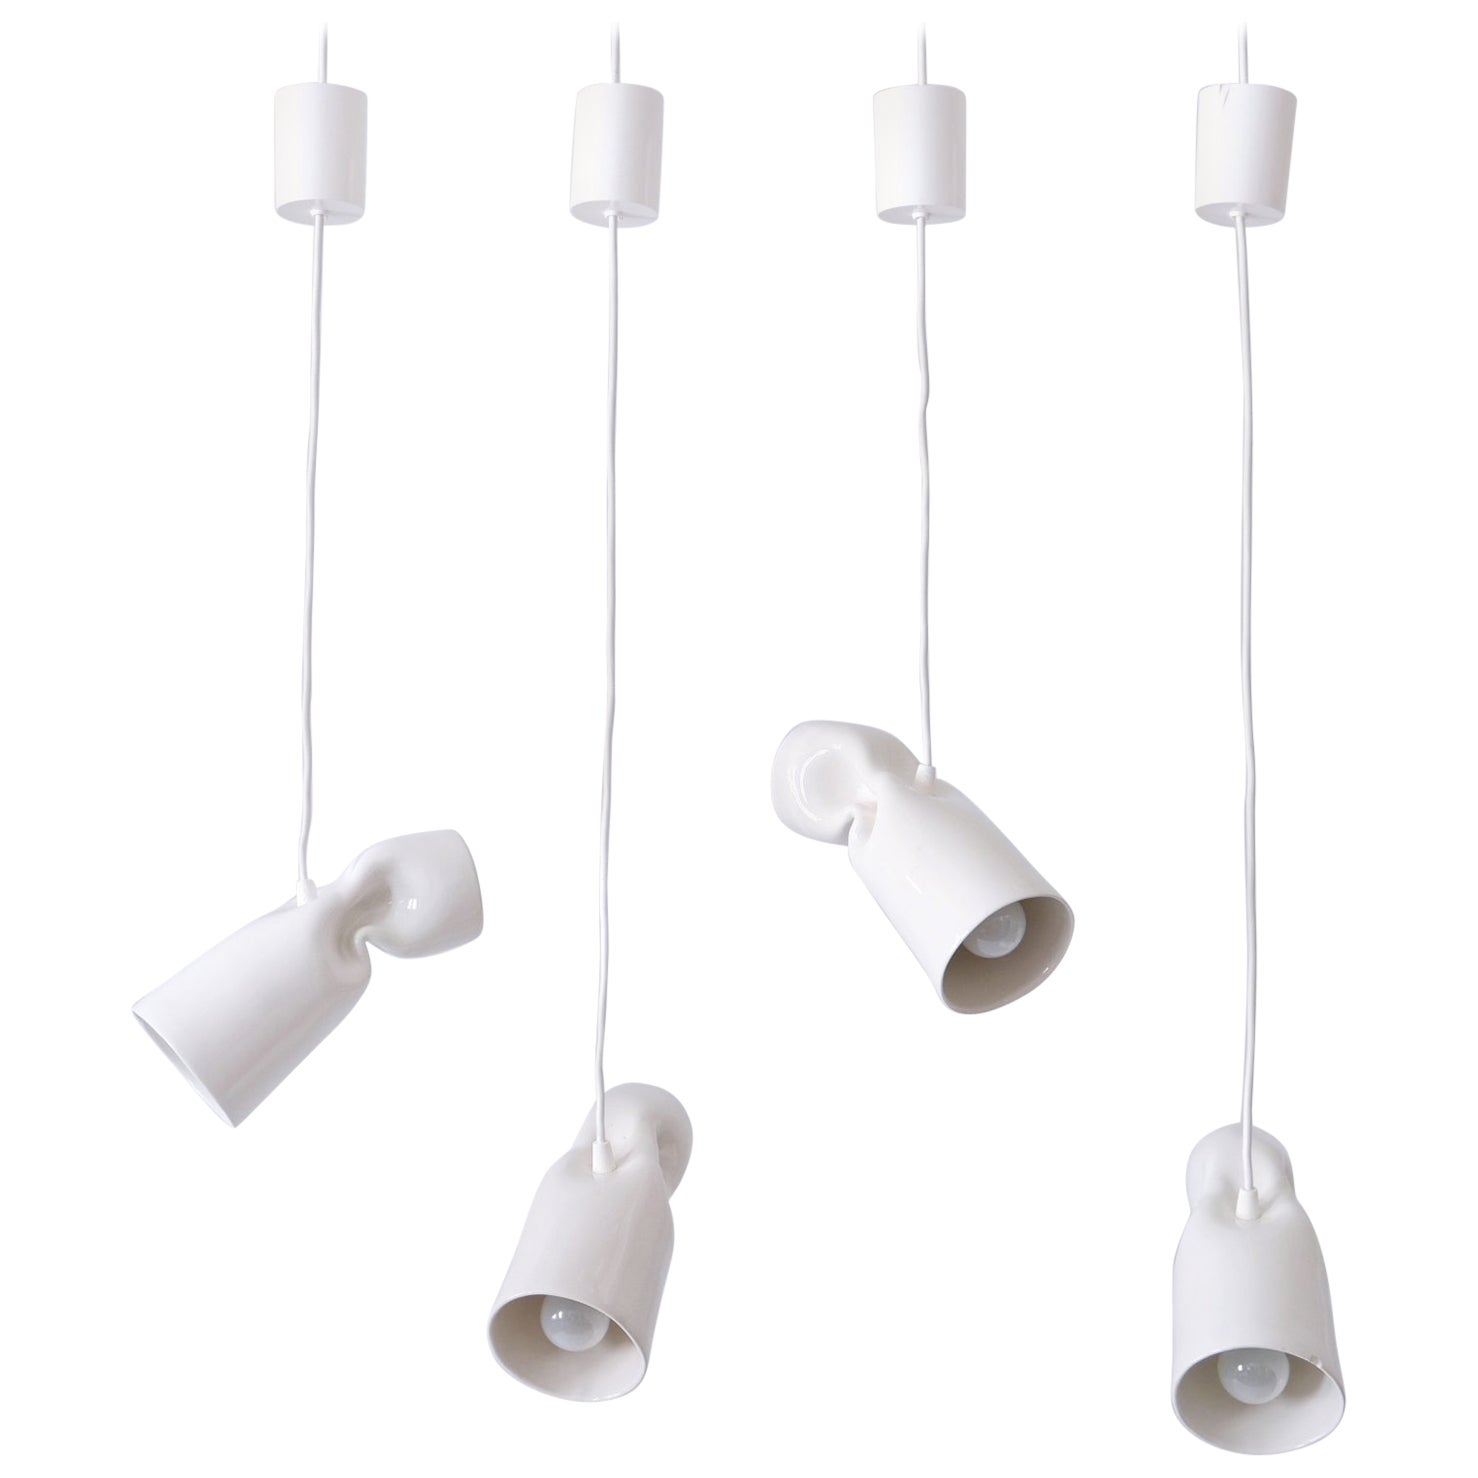 Set of Four Strangled Light Pendant Lamps by Gitta Gschwendtner for Artificial